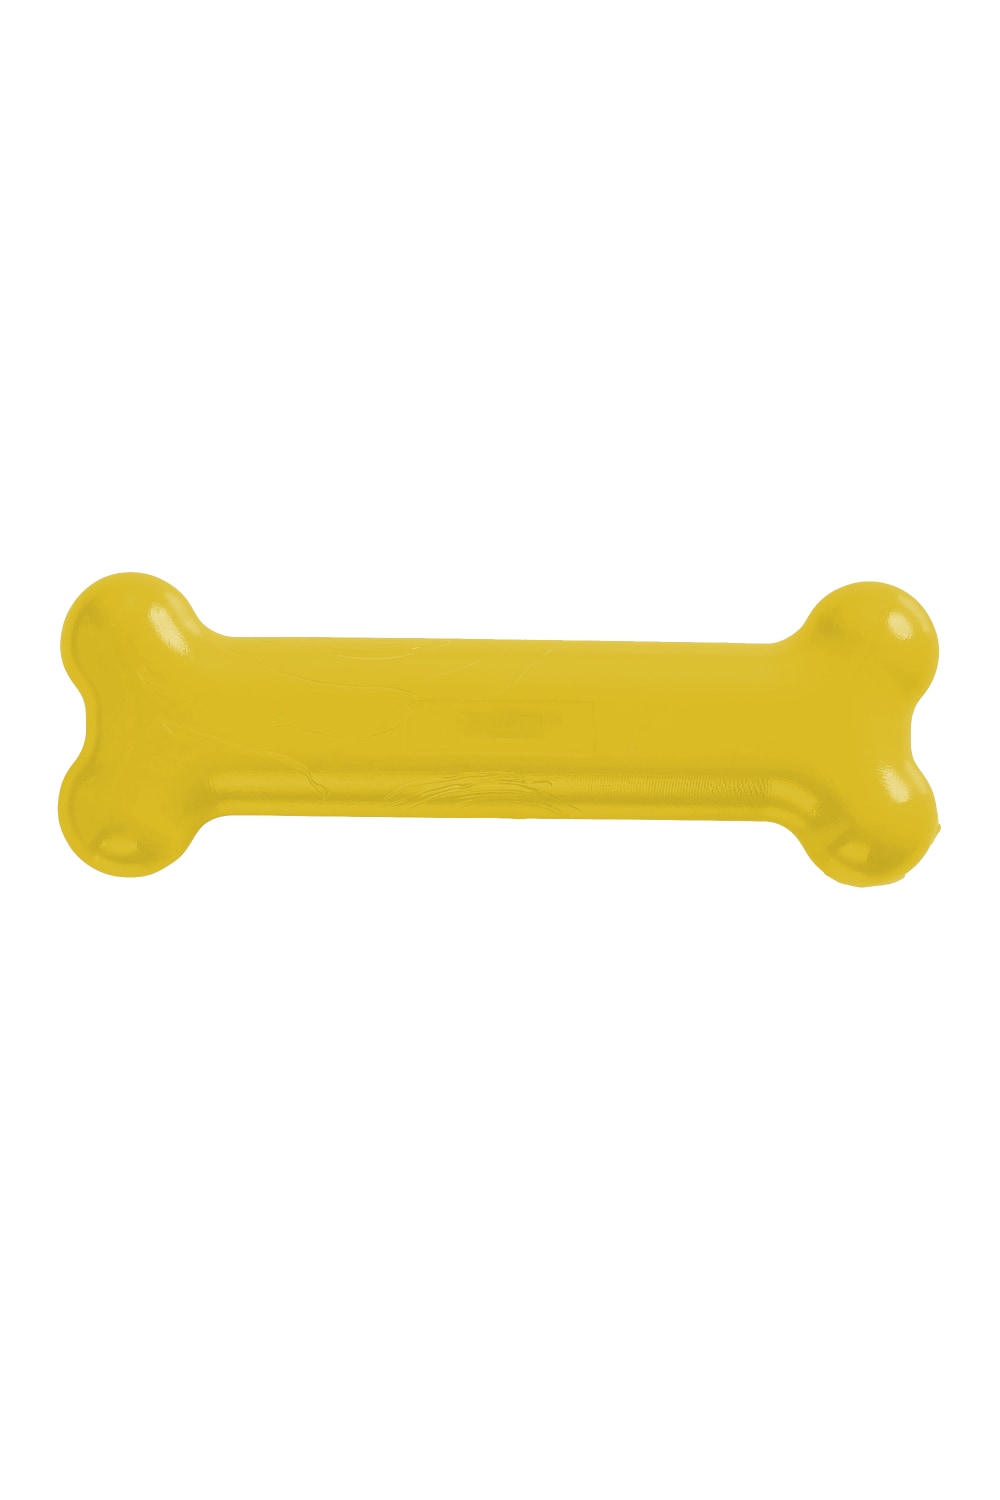 TastyBone Nylon Chicken Bone Chew (May Vary) (Puppy/Toy Breeds)